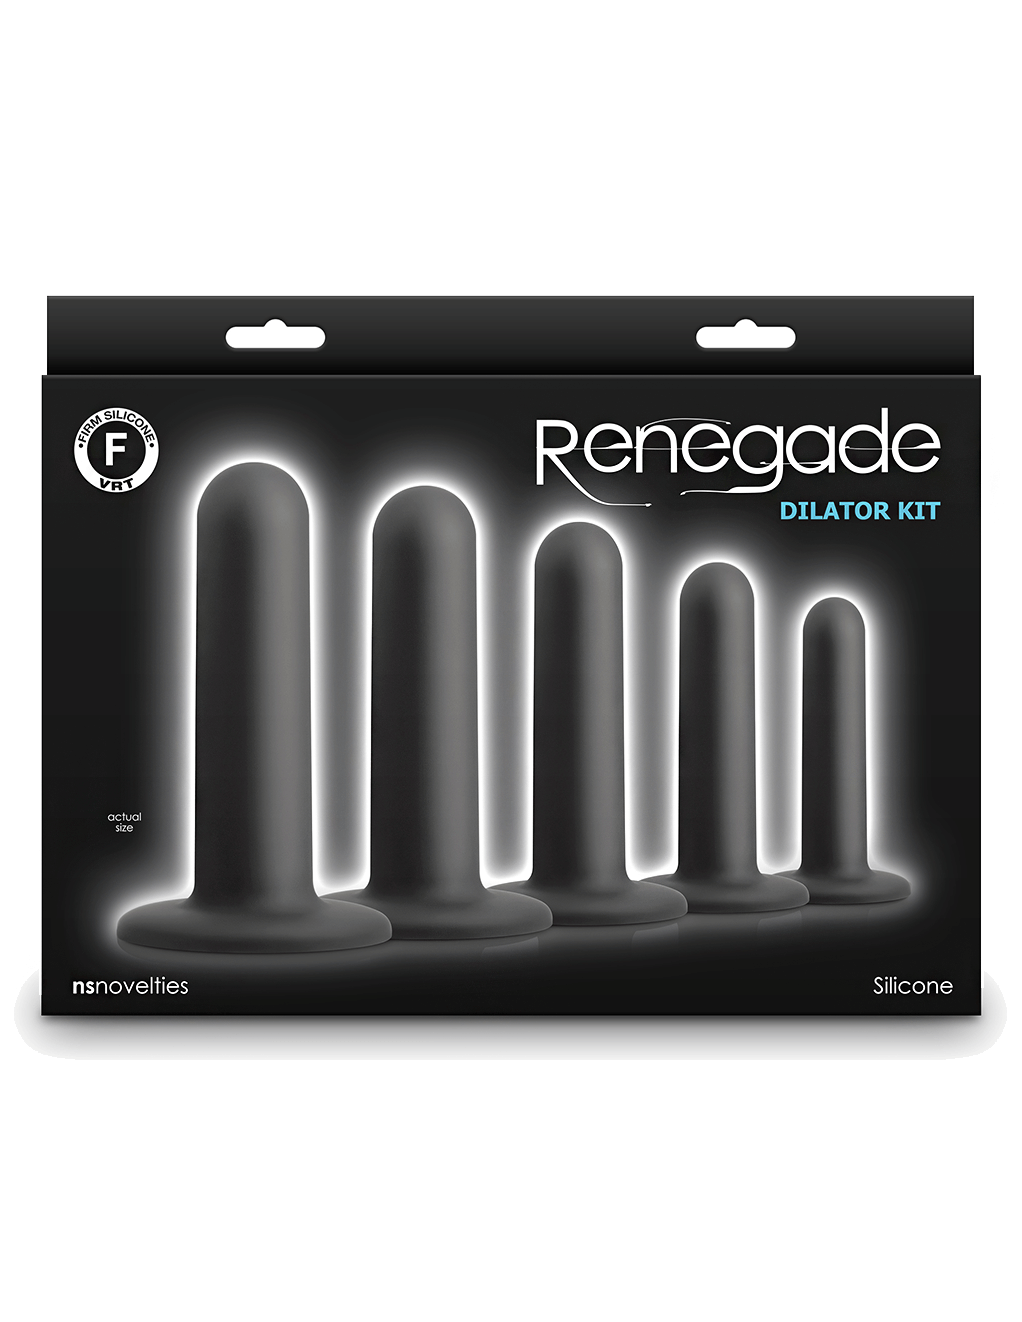 Renegade Dilator Kit - Black - Box - Front